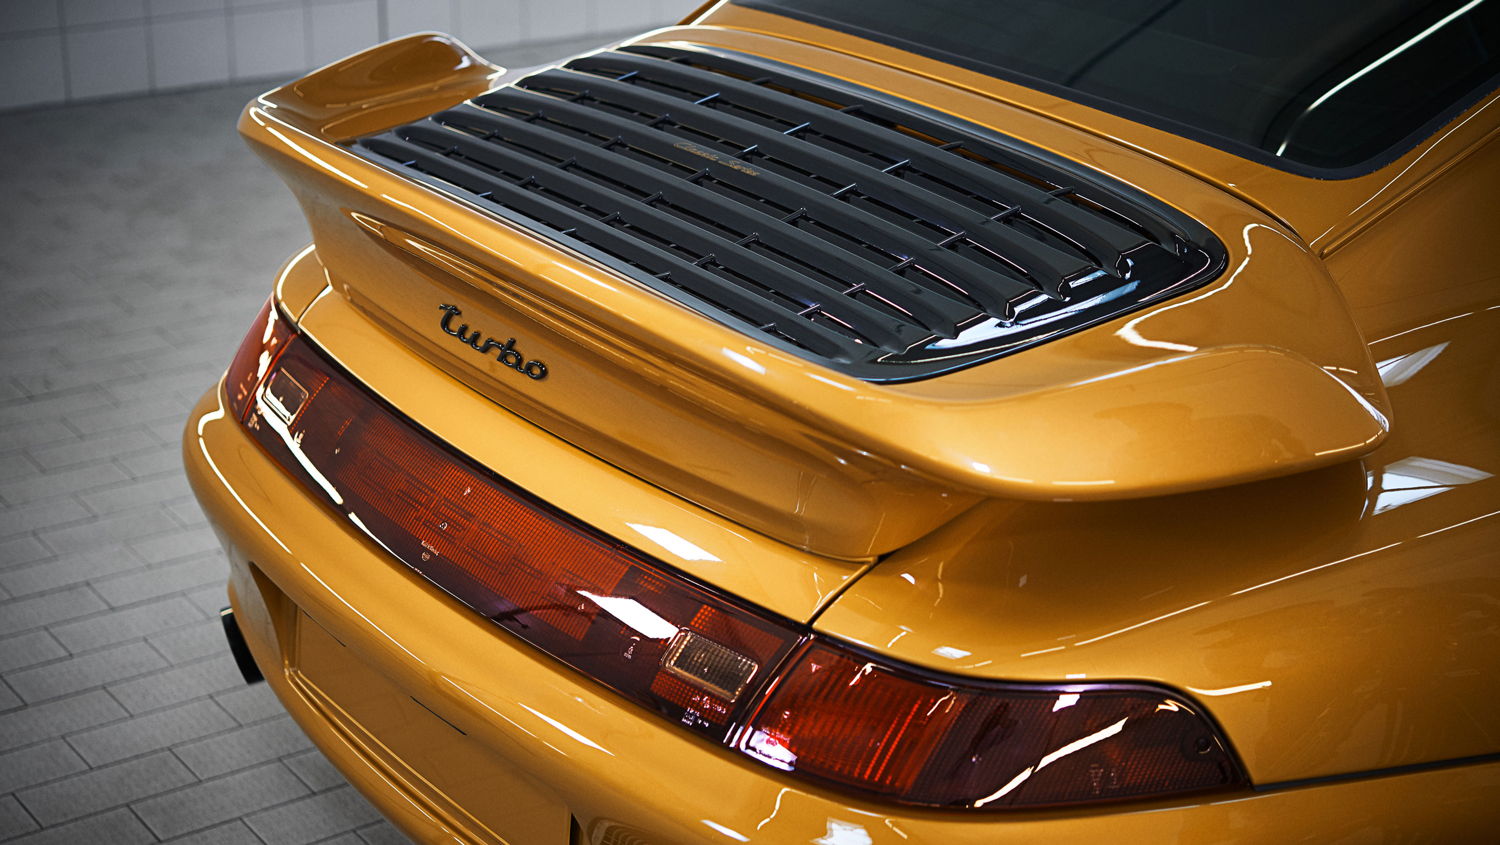 911 Turbo modelo 993 - Proyecto de Oro de Porsche Classic